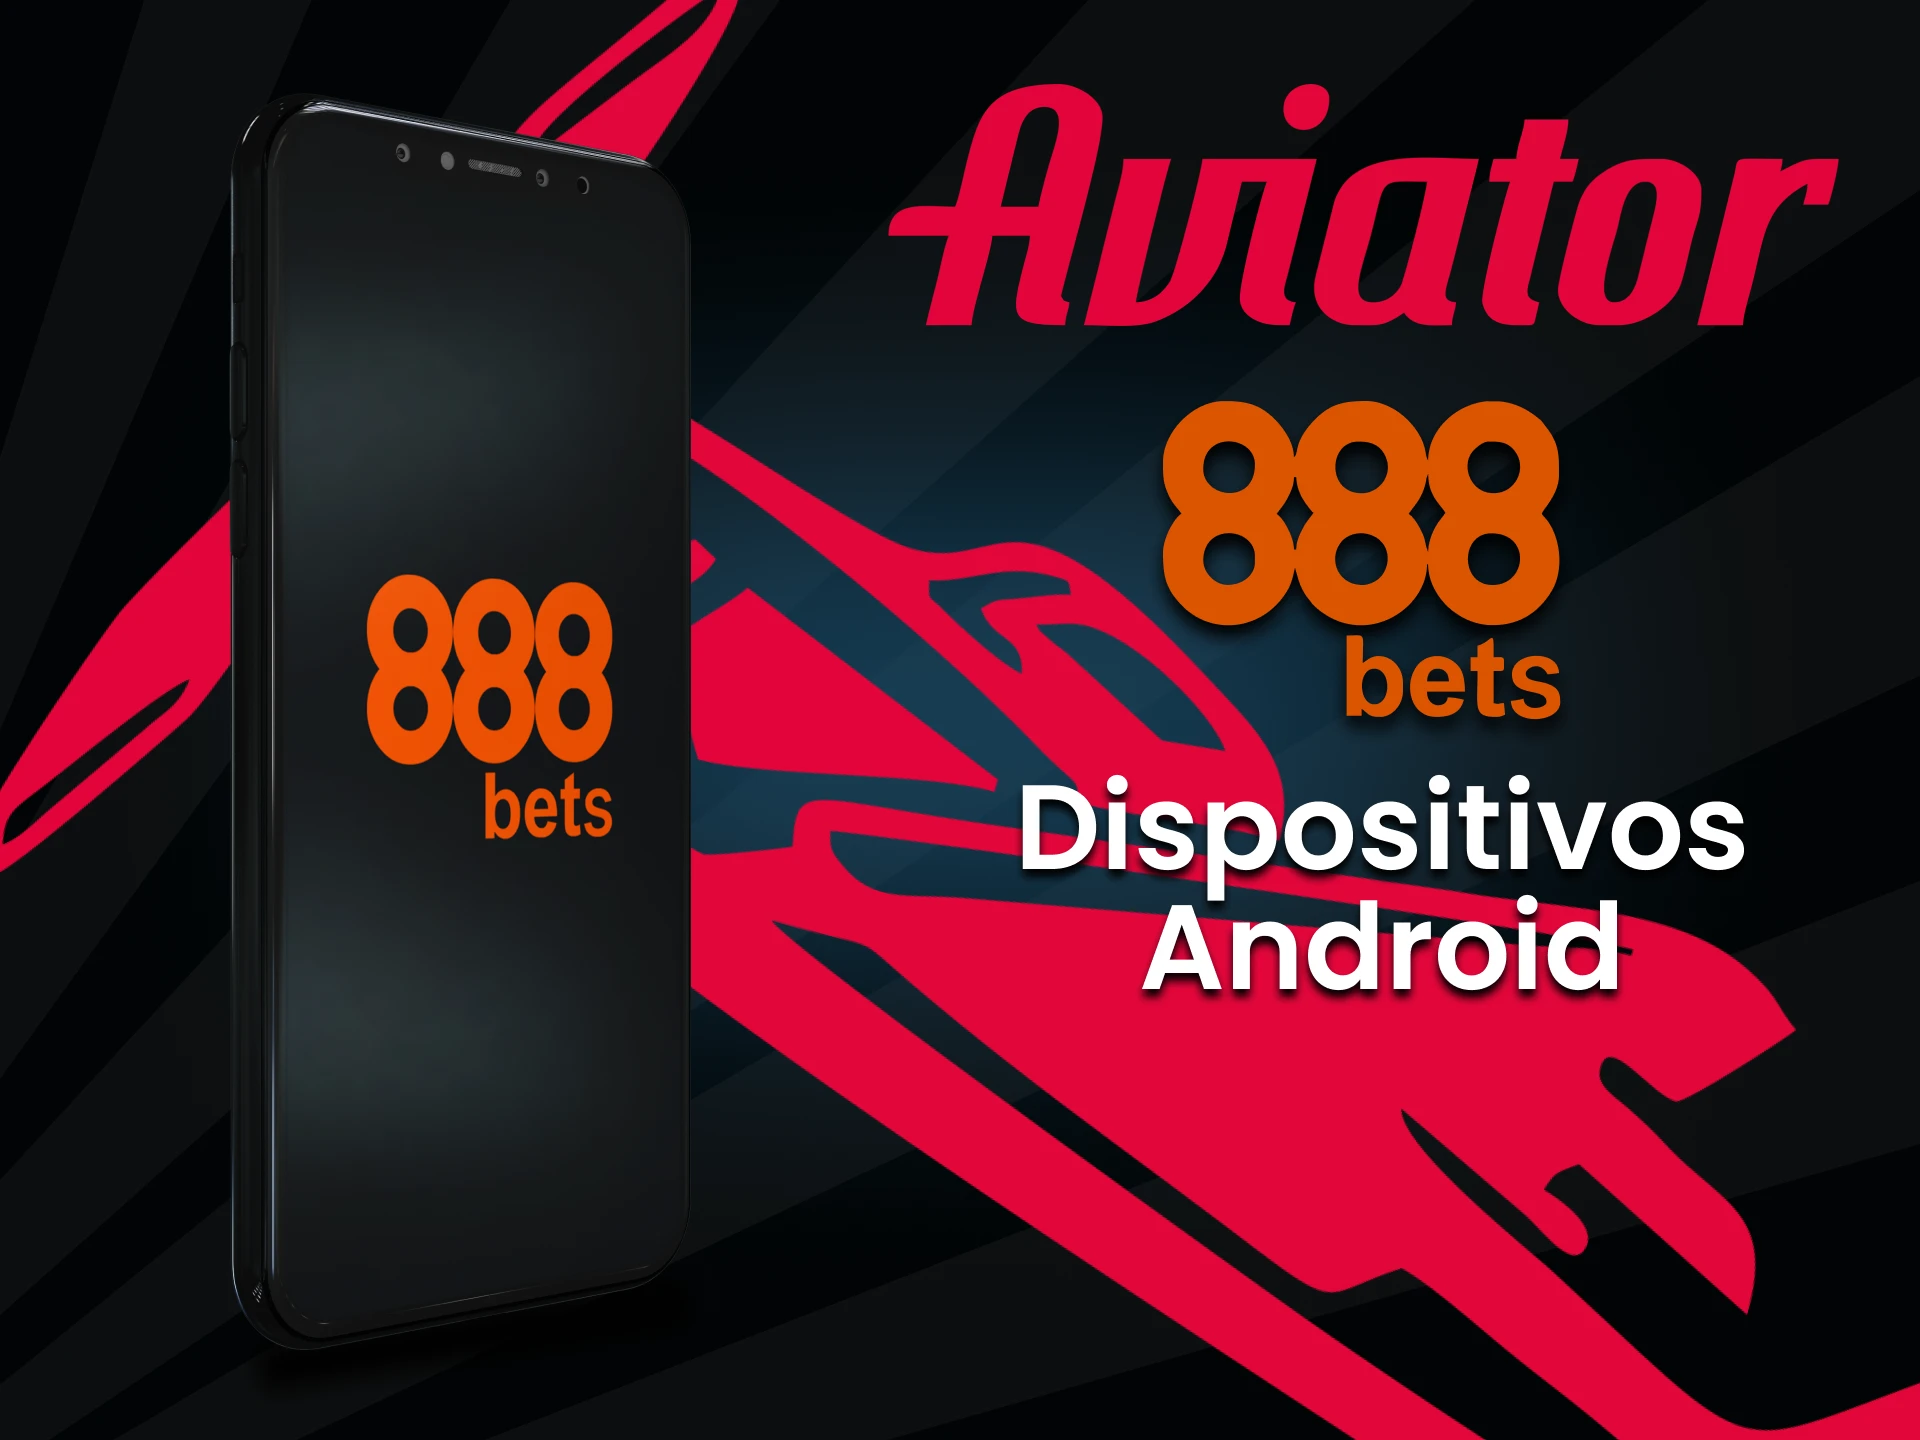 Instale o aplicativo 888bets para jogar Aviator no Android.